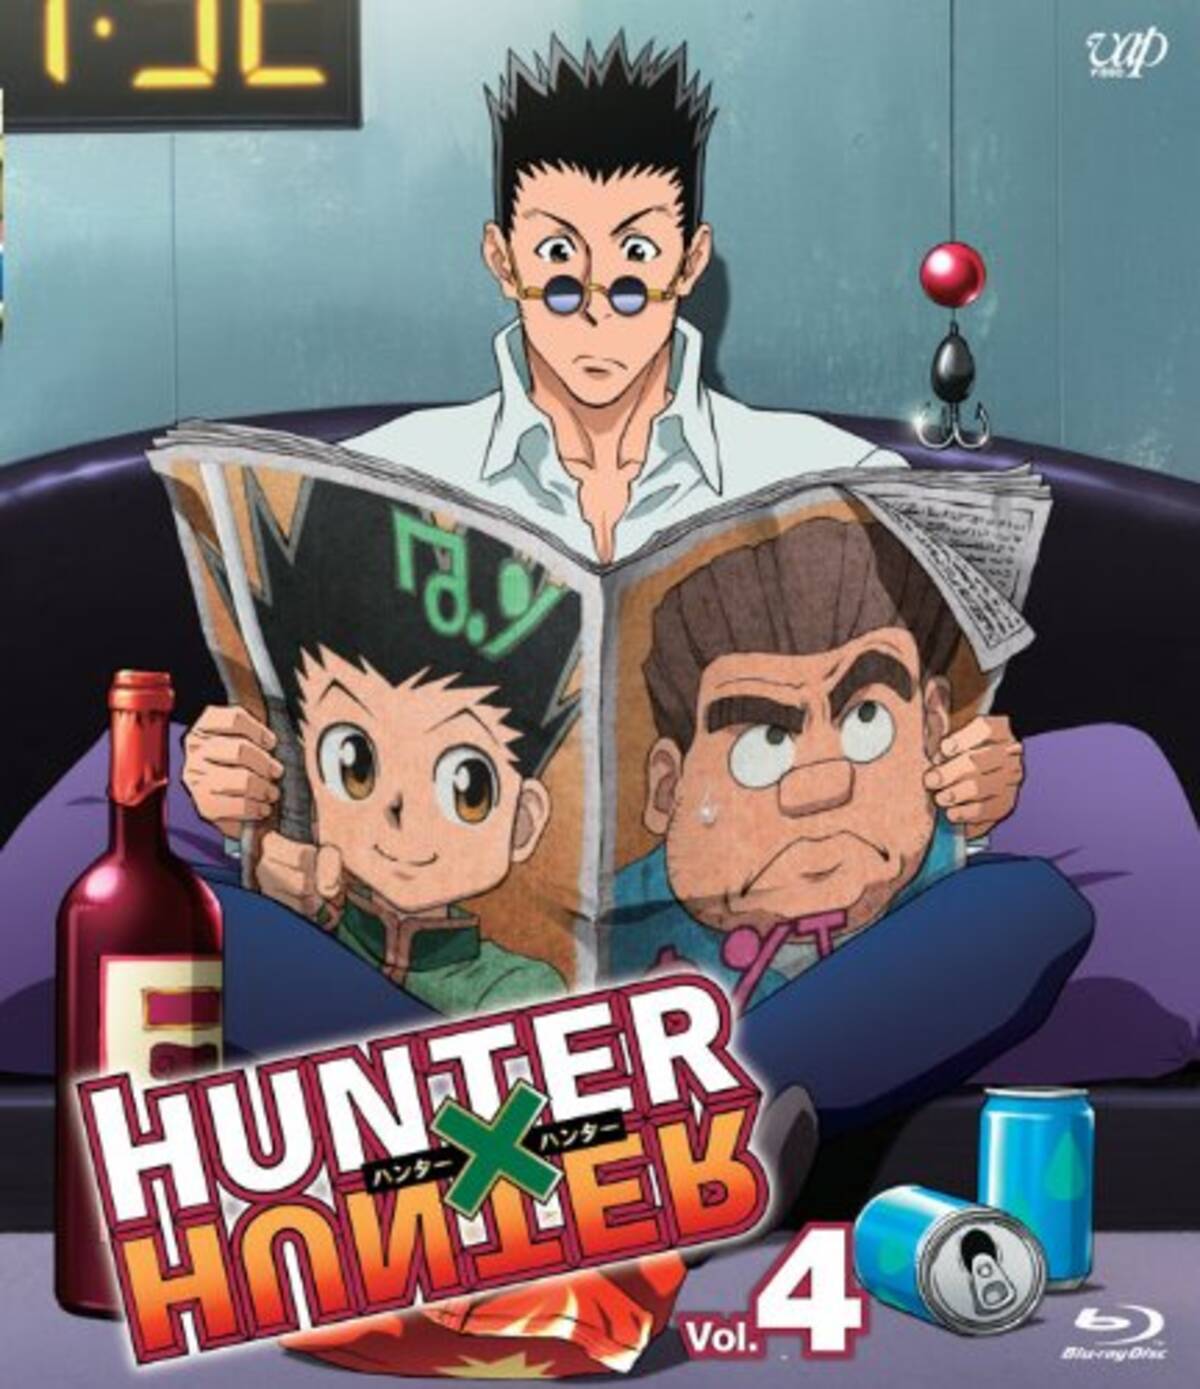 アニメキャラの魅力 真面目で実直 時々熱血 レオリオ パラディナイト の魅力とは Hunter Hunter 15年2月27日 エキサイトニュース 2 2